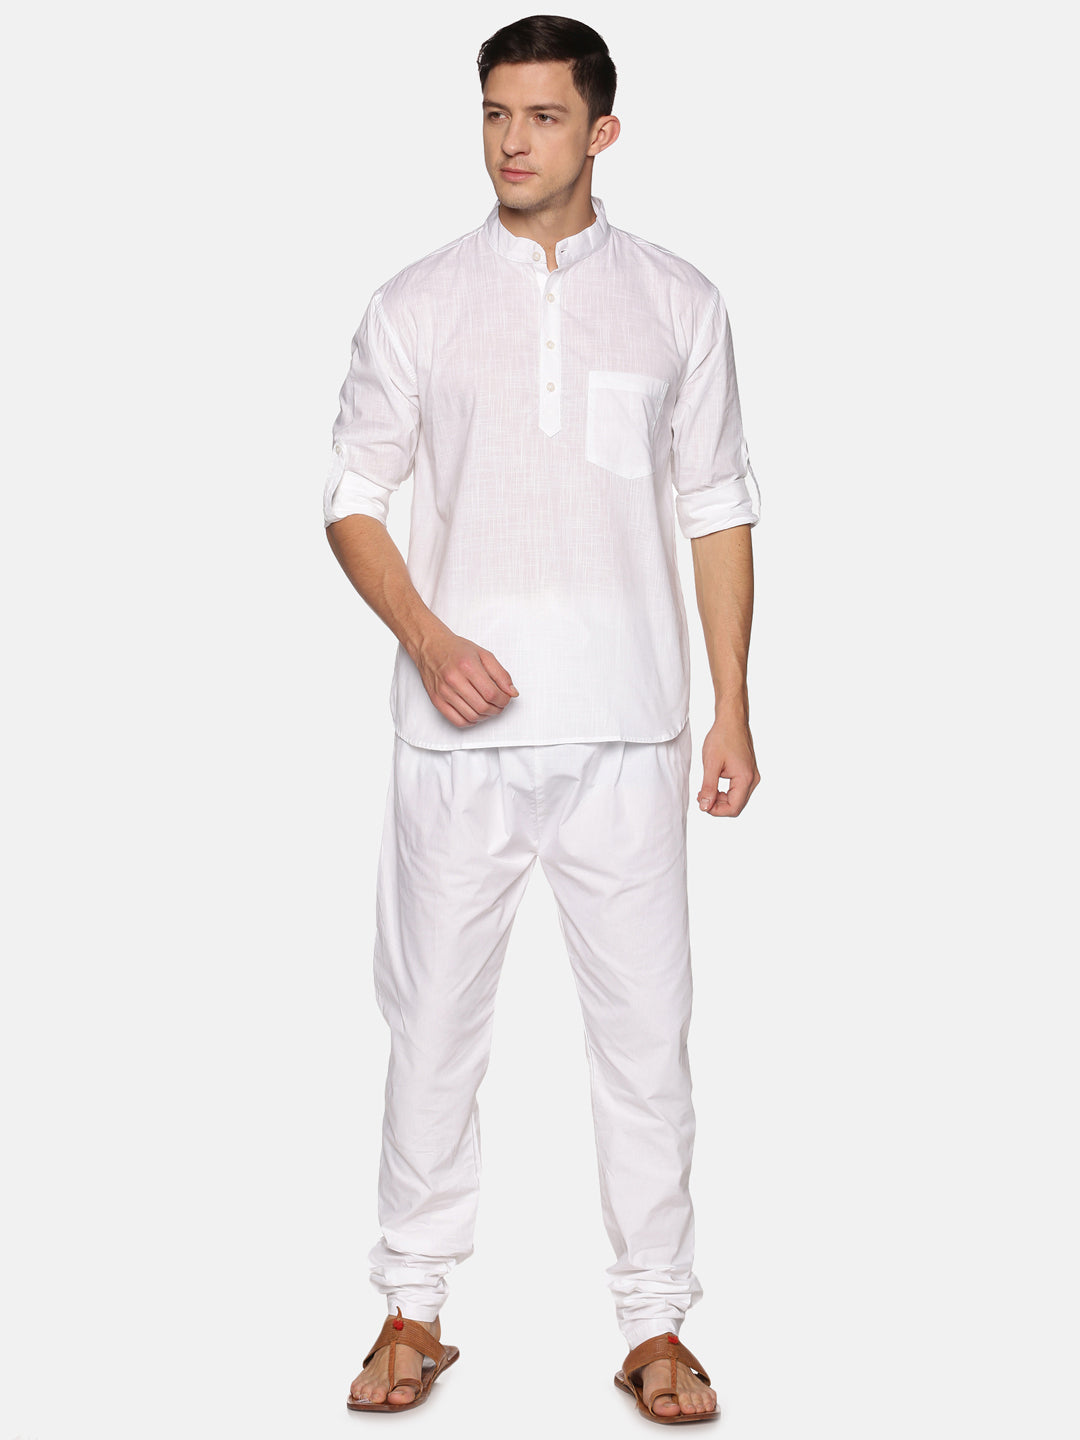 Men White Colour Cotton Kurta Pyjama Set